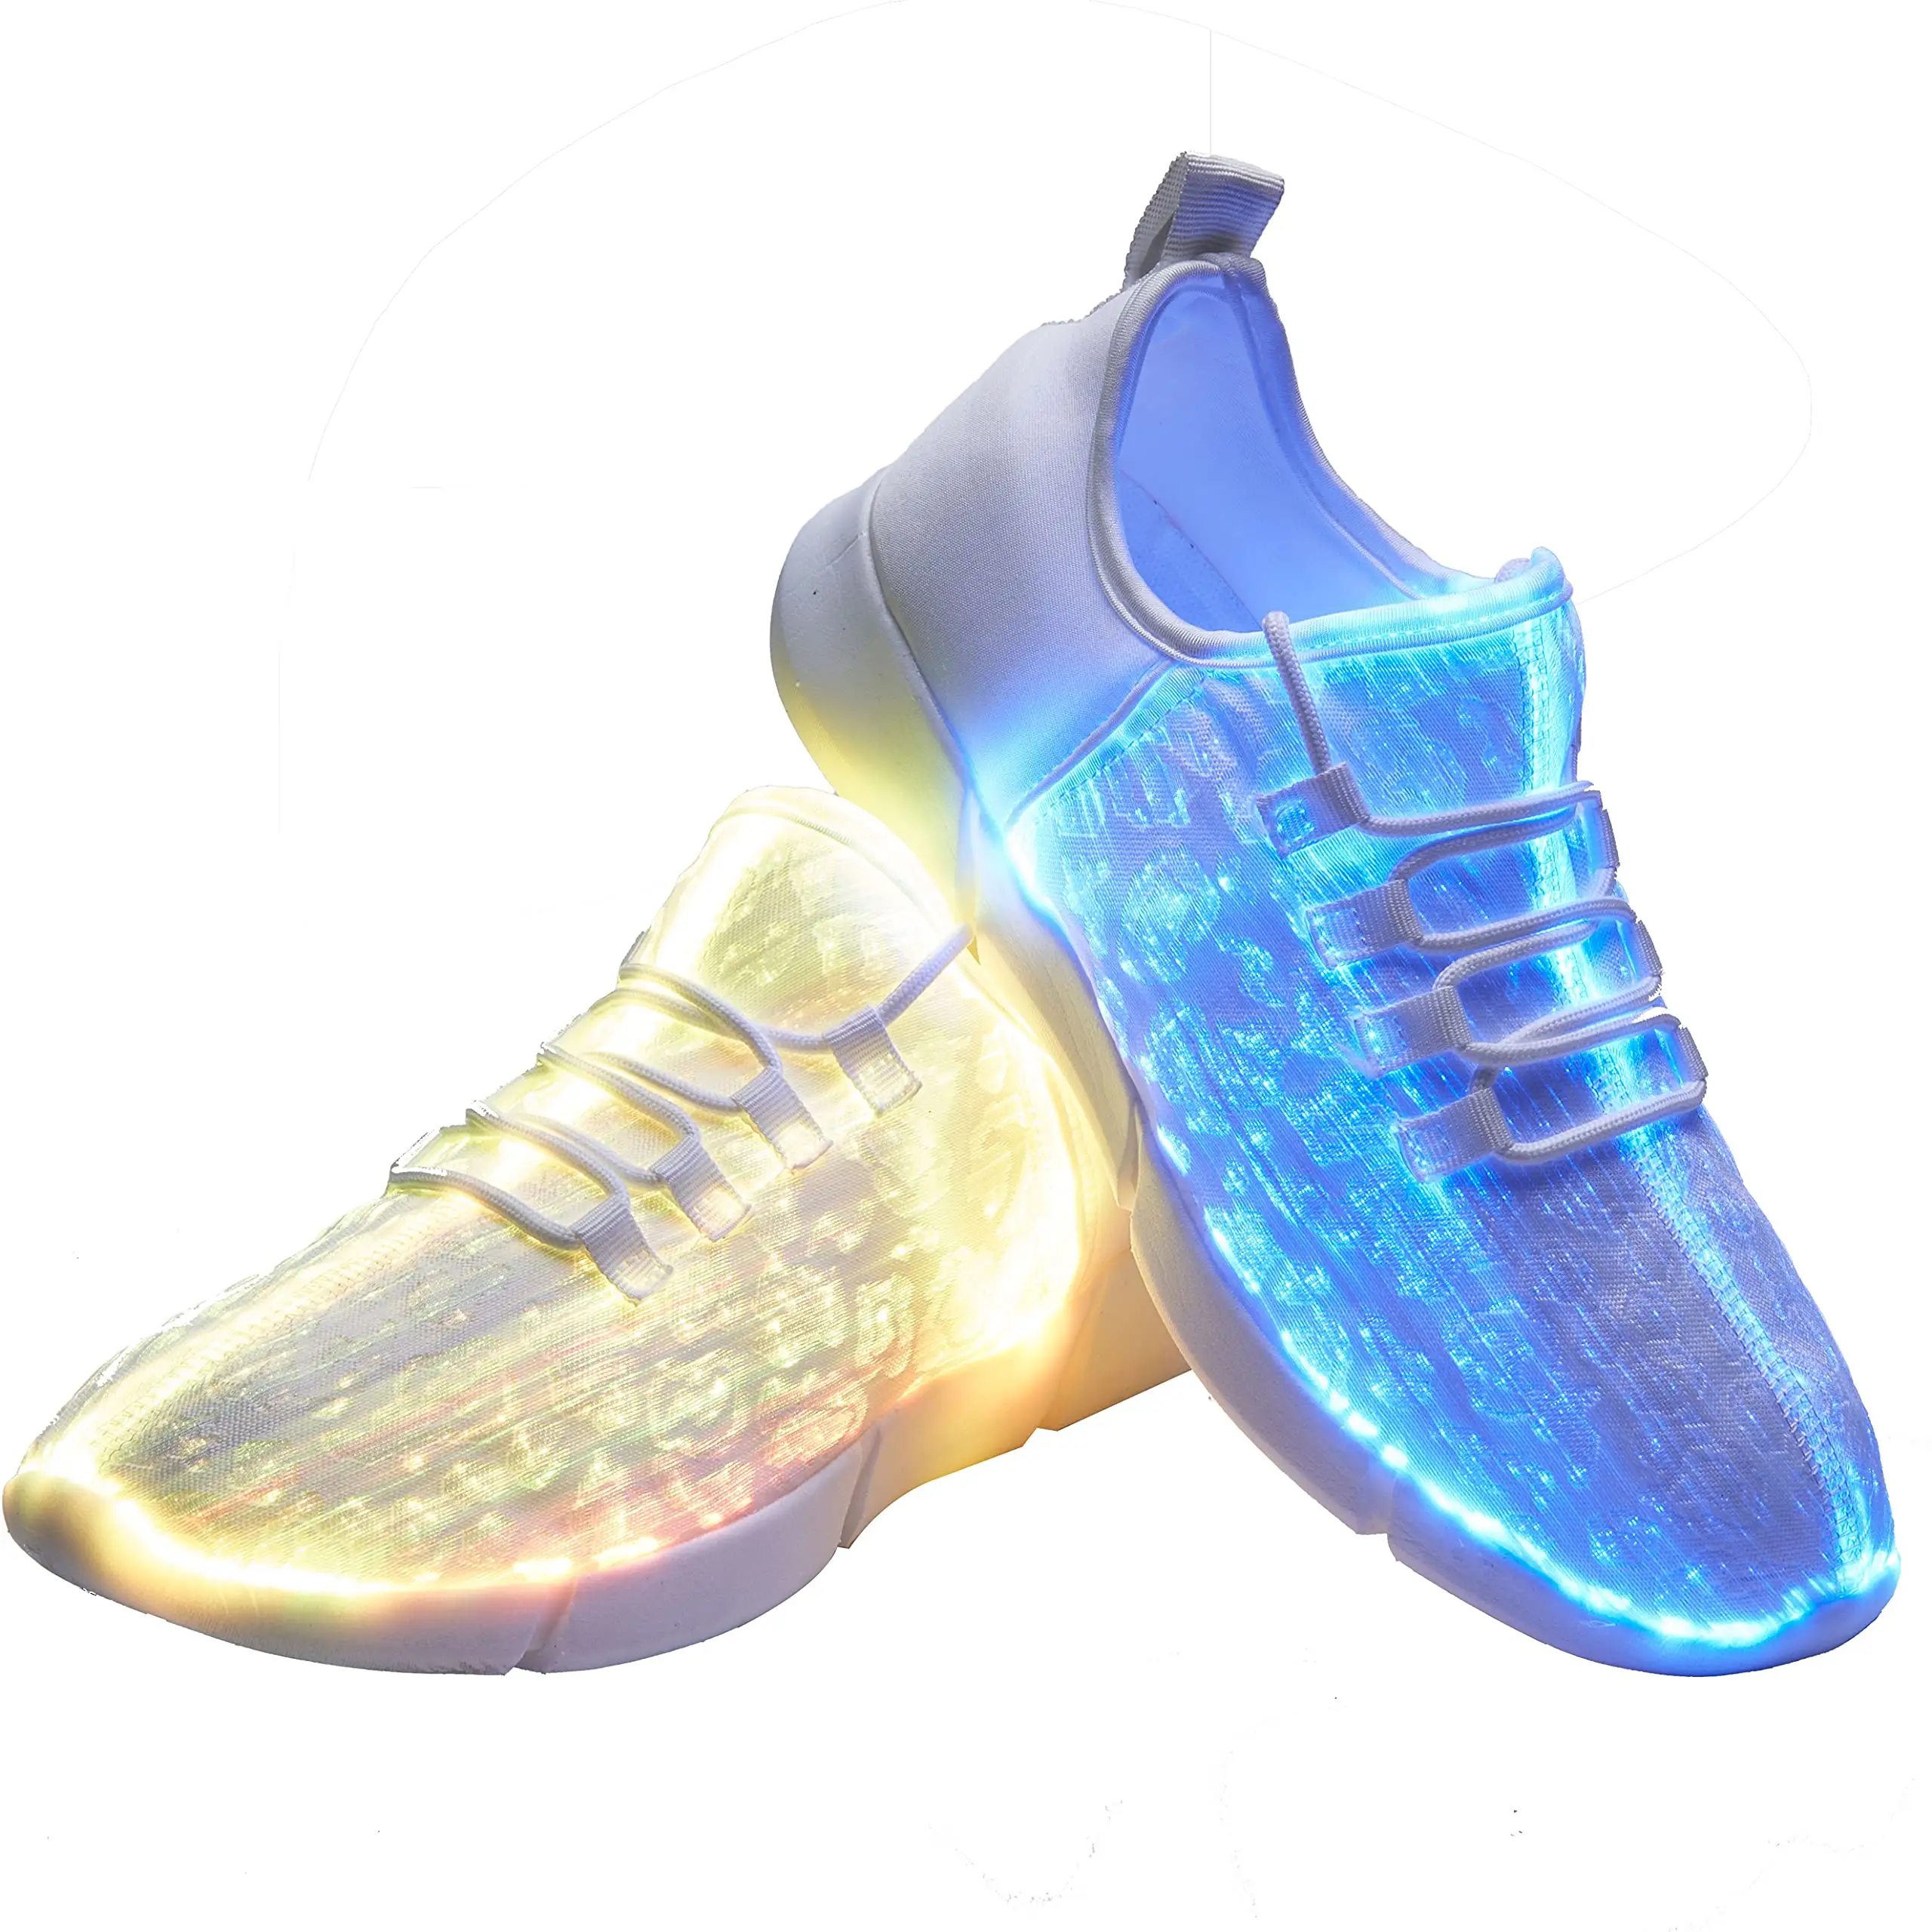 รองเท้าผ้าใบติดไฟเบอร์ออปติกสำหรับผู้หญิงและผู้ชาย,รองเท้าผ้าใบมีไฟกระพริบไฟ LED สำหรับเทศกาลฮาโลวีนพร้อมที่ชาร์จ USB